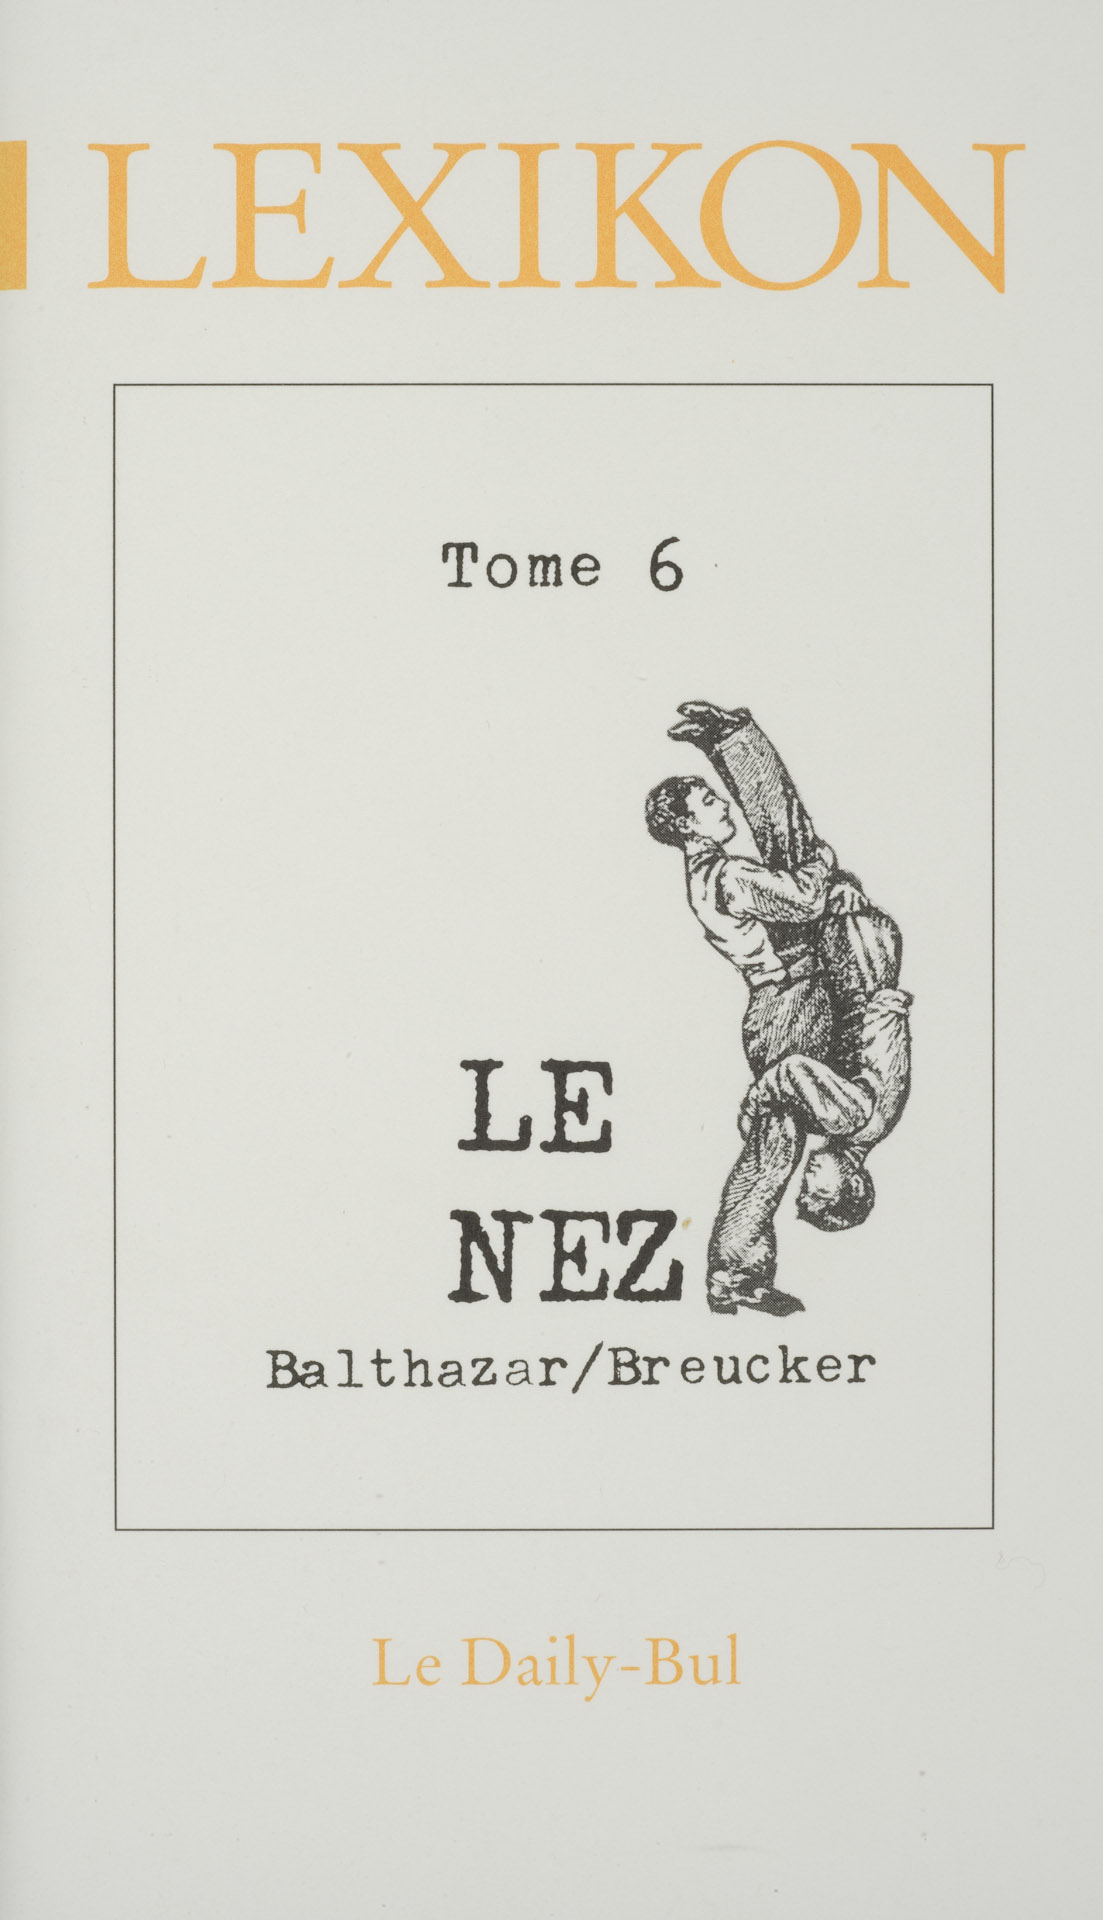 Le nez (Lexikon tome 6)